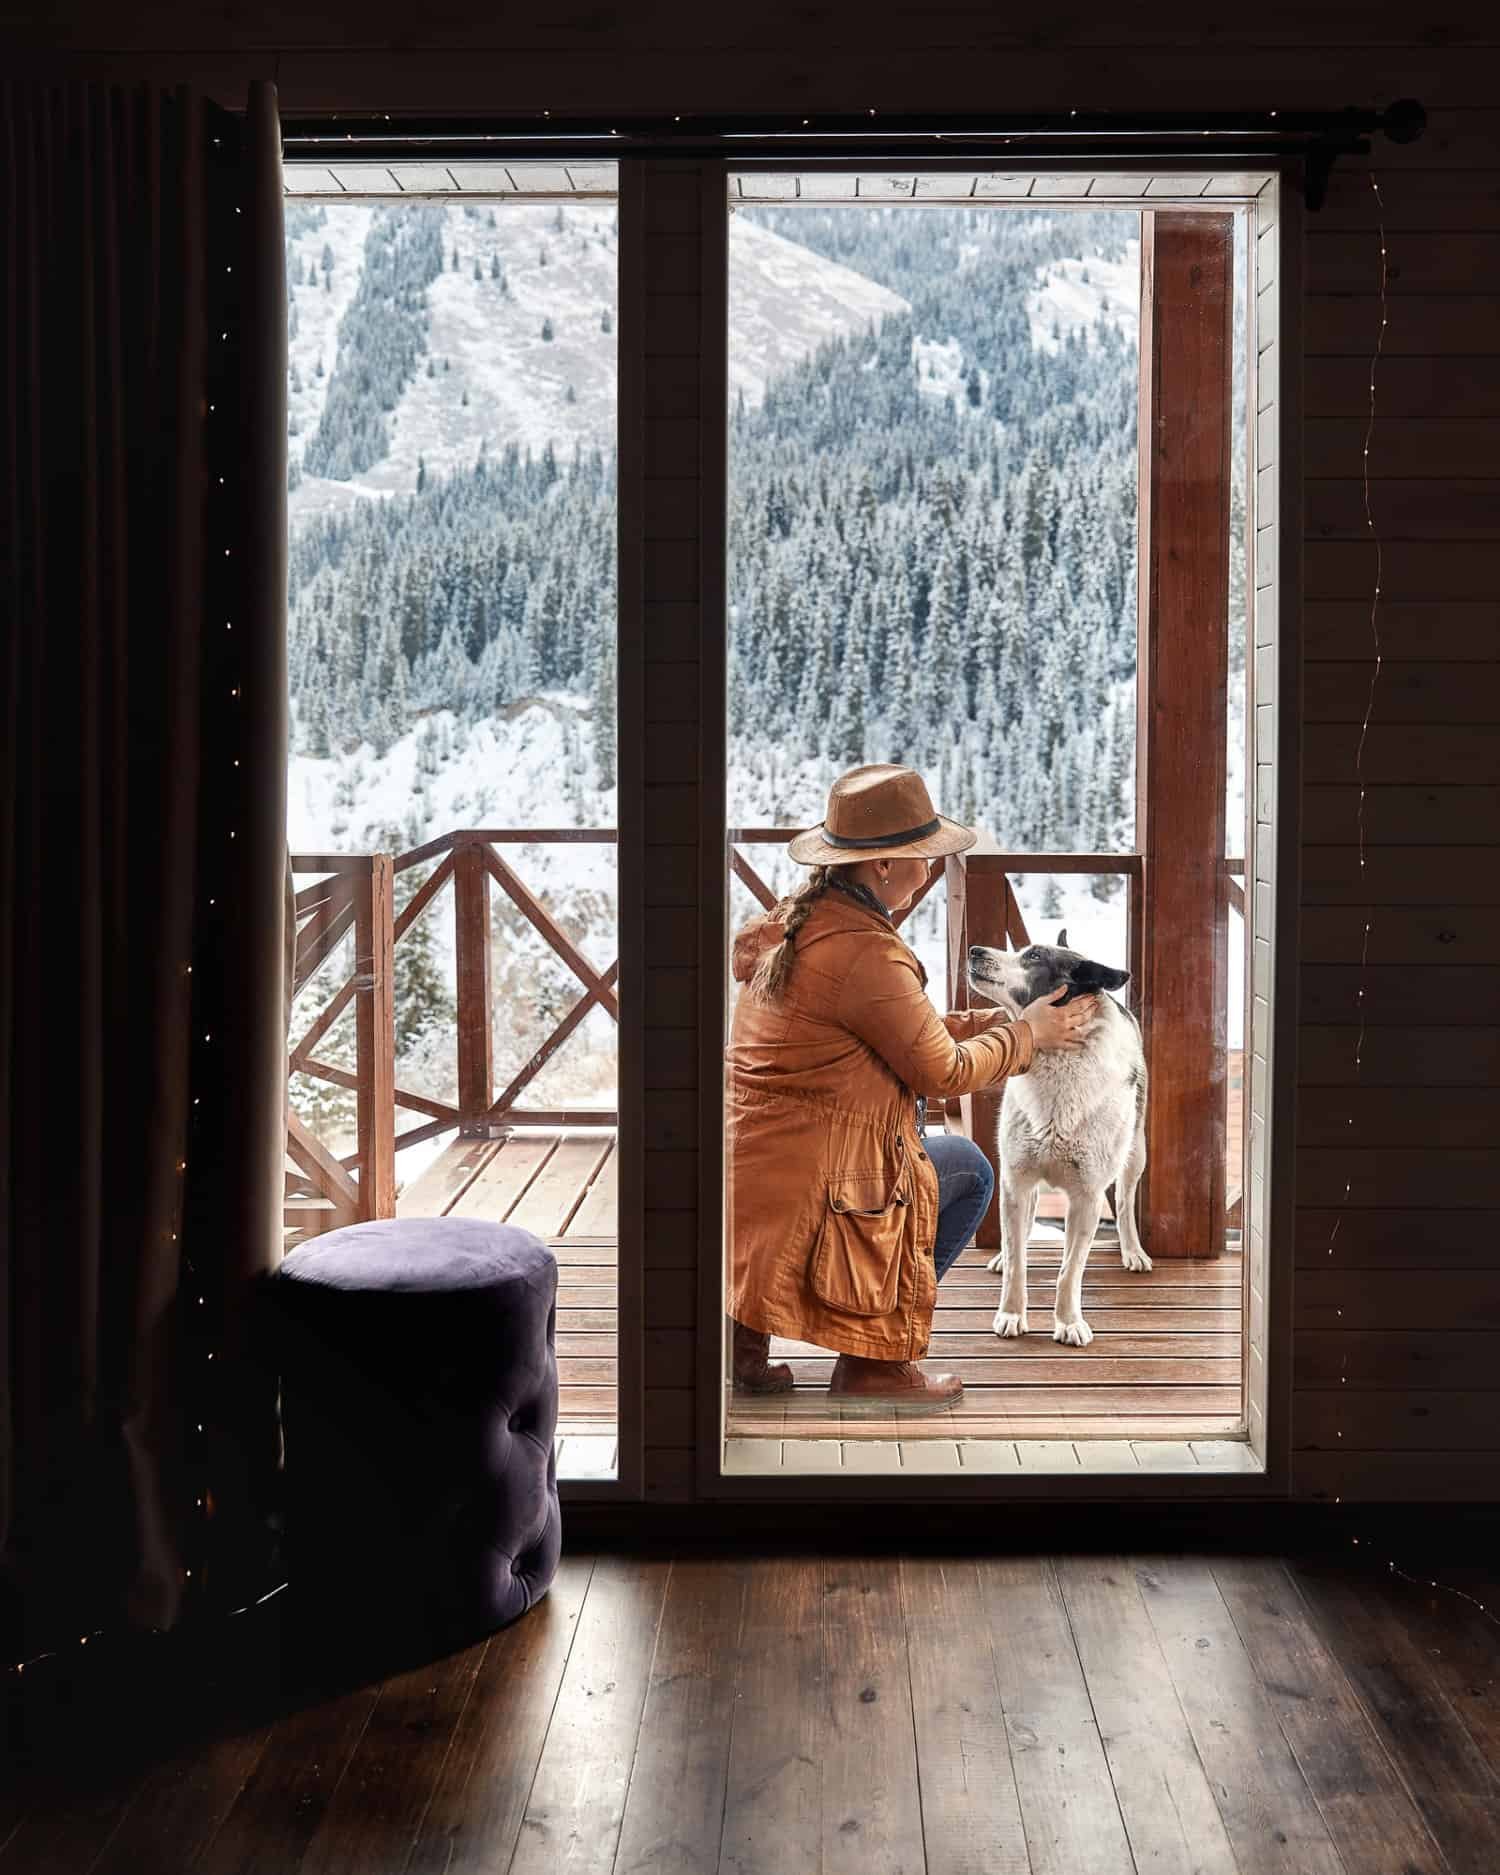 Frau mit Hut spielt im Winter mit ihrem Hund auf dem Deck eines haustierfreundlichen Ferienobjekts